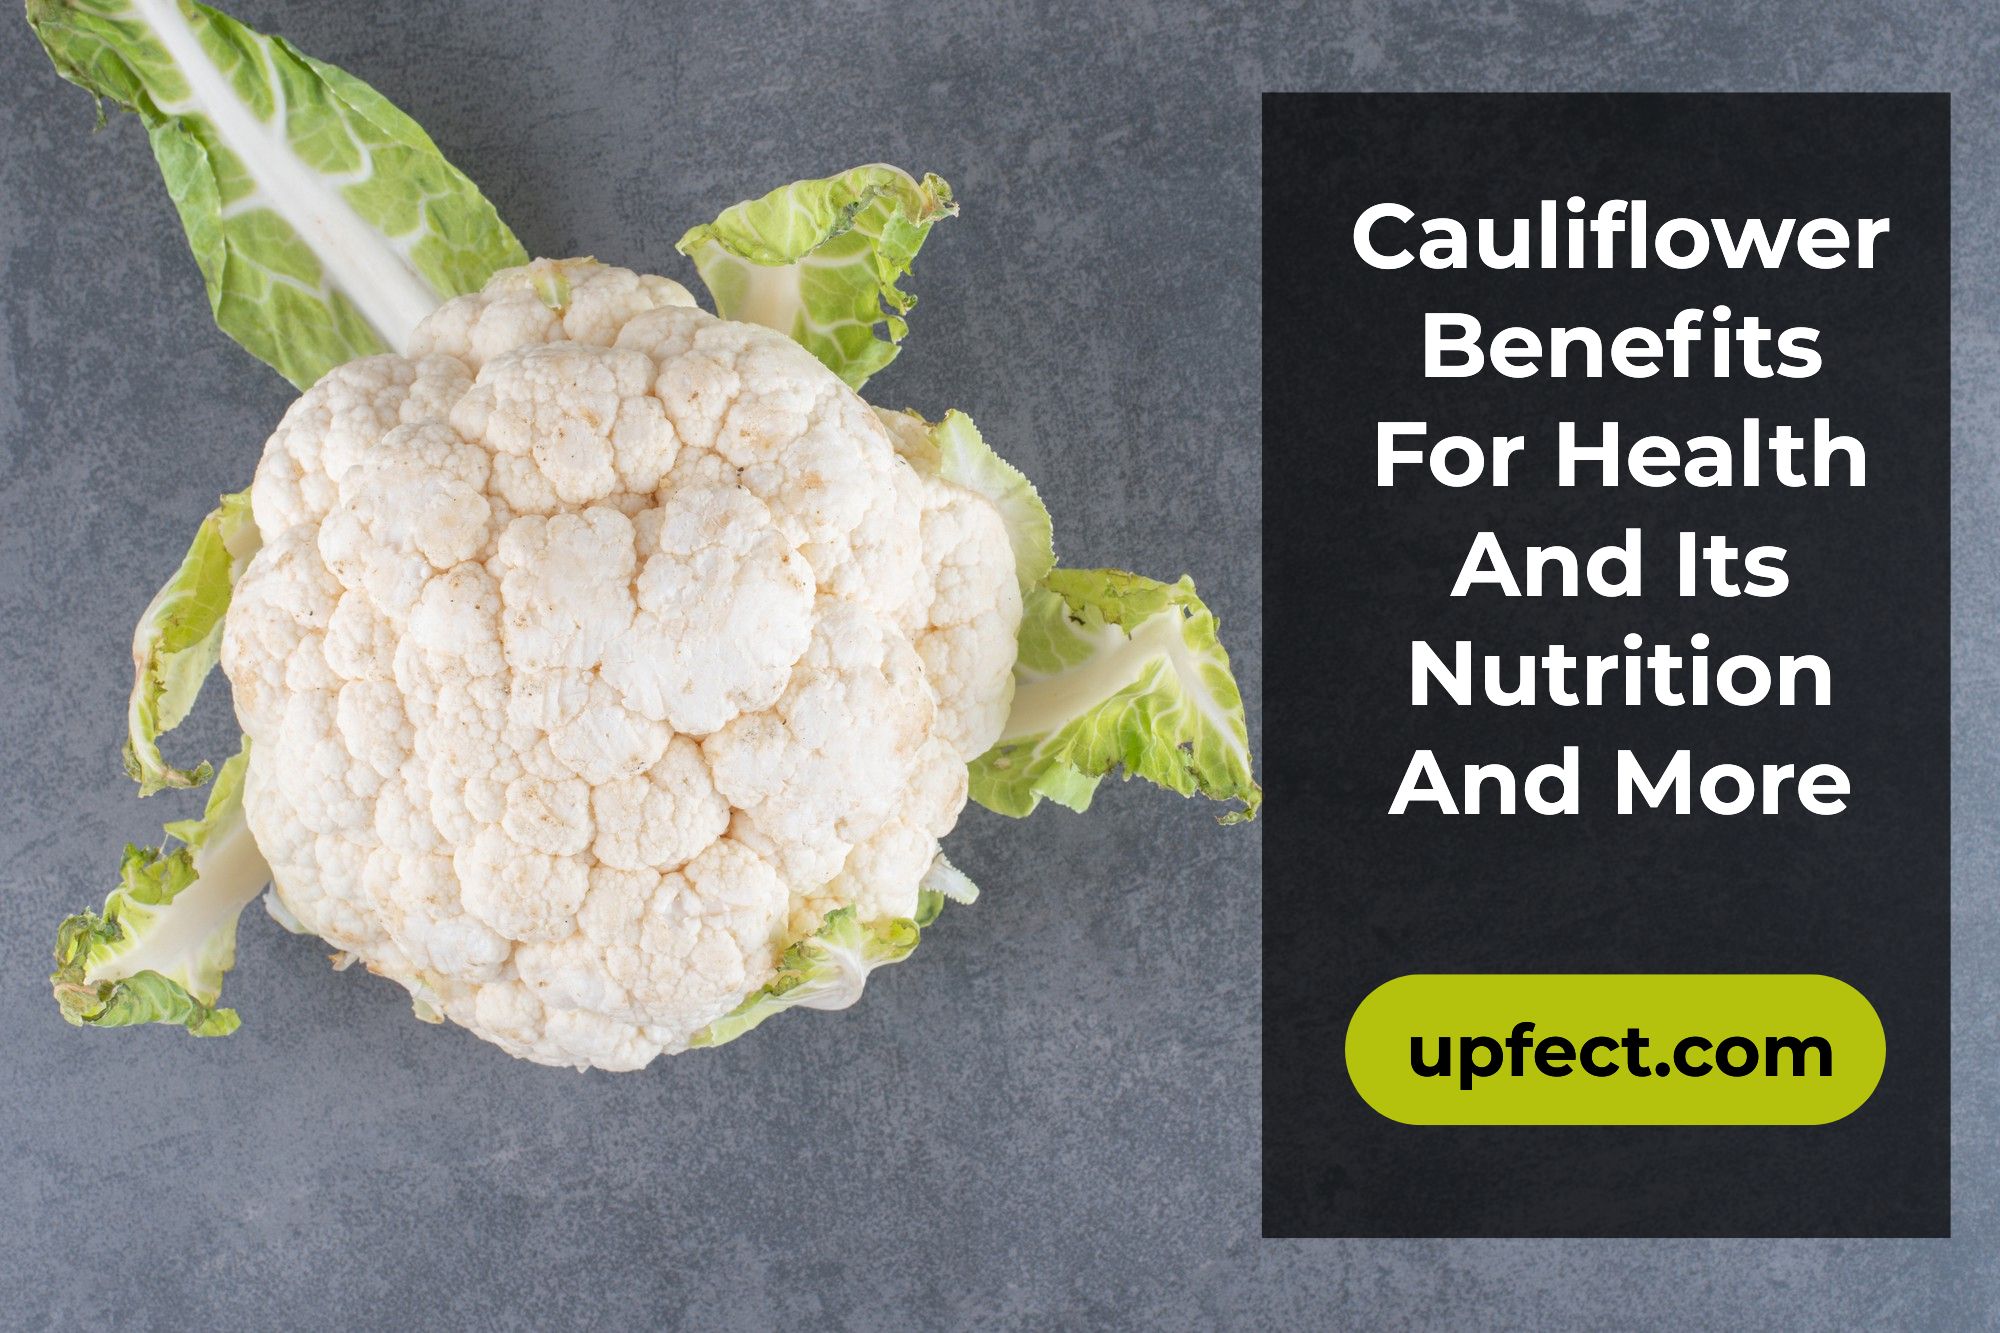 Cauliflower Benefits For Health